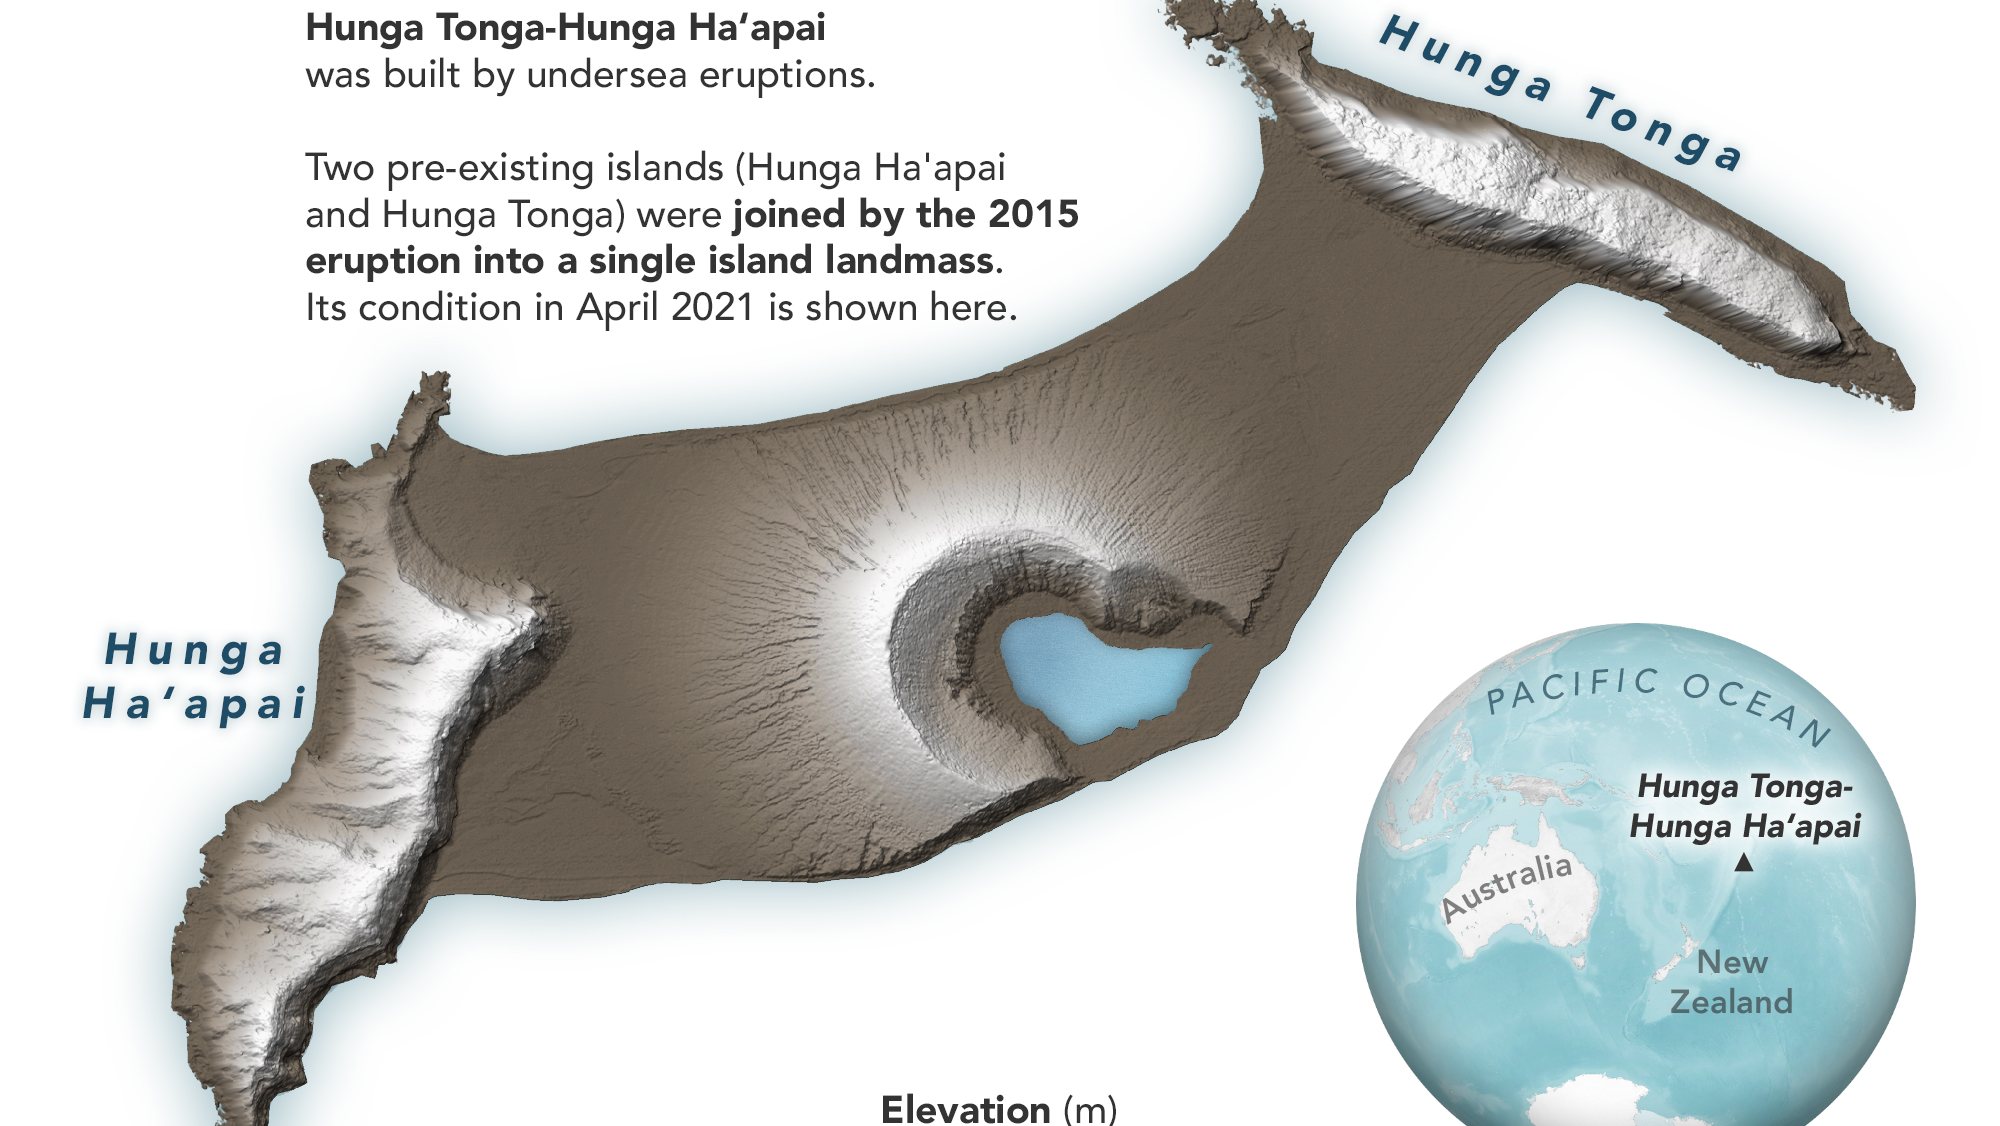 A ilha do Pacífico a que pertencia o vulcão Hunga-Tonga-Hunga-Ha’apa entes da erupção de 15 de janeiro de 2022